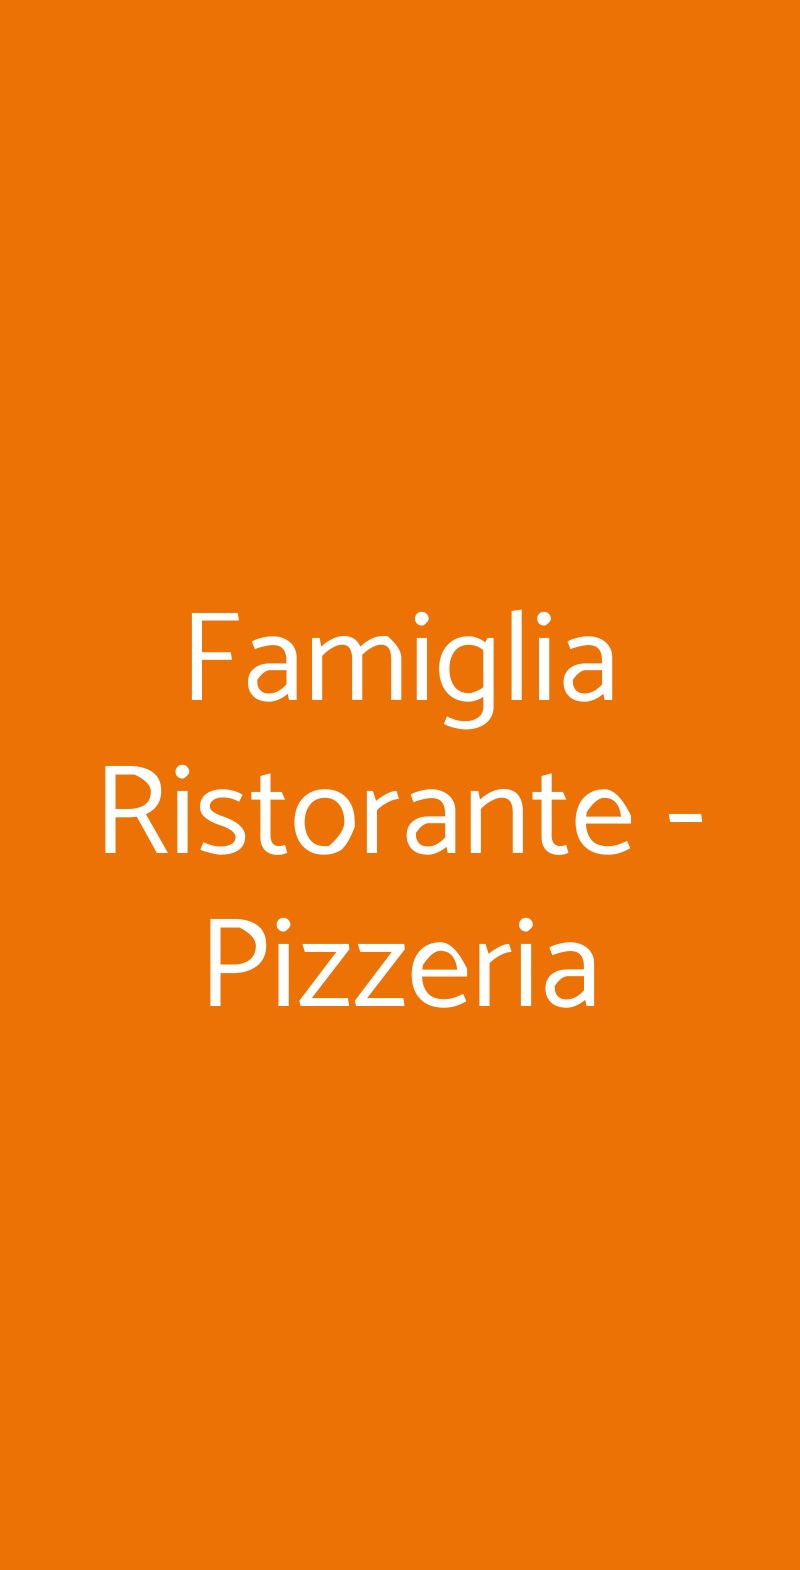 Famiglia Ristorante - Pizzeria Roma menù 1 pagina